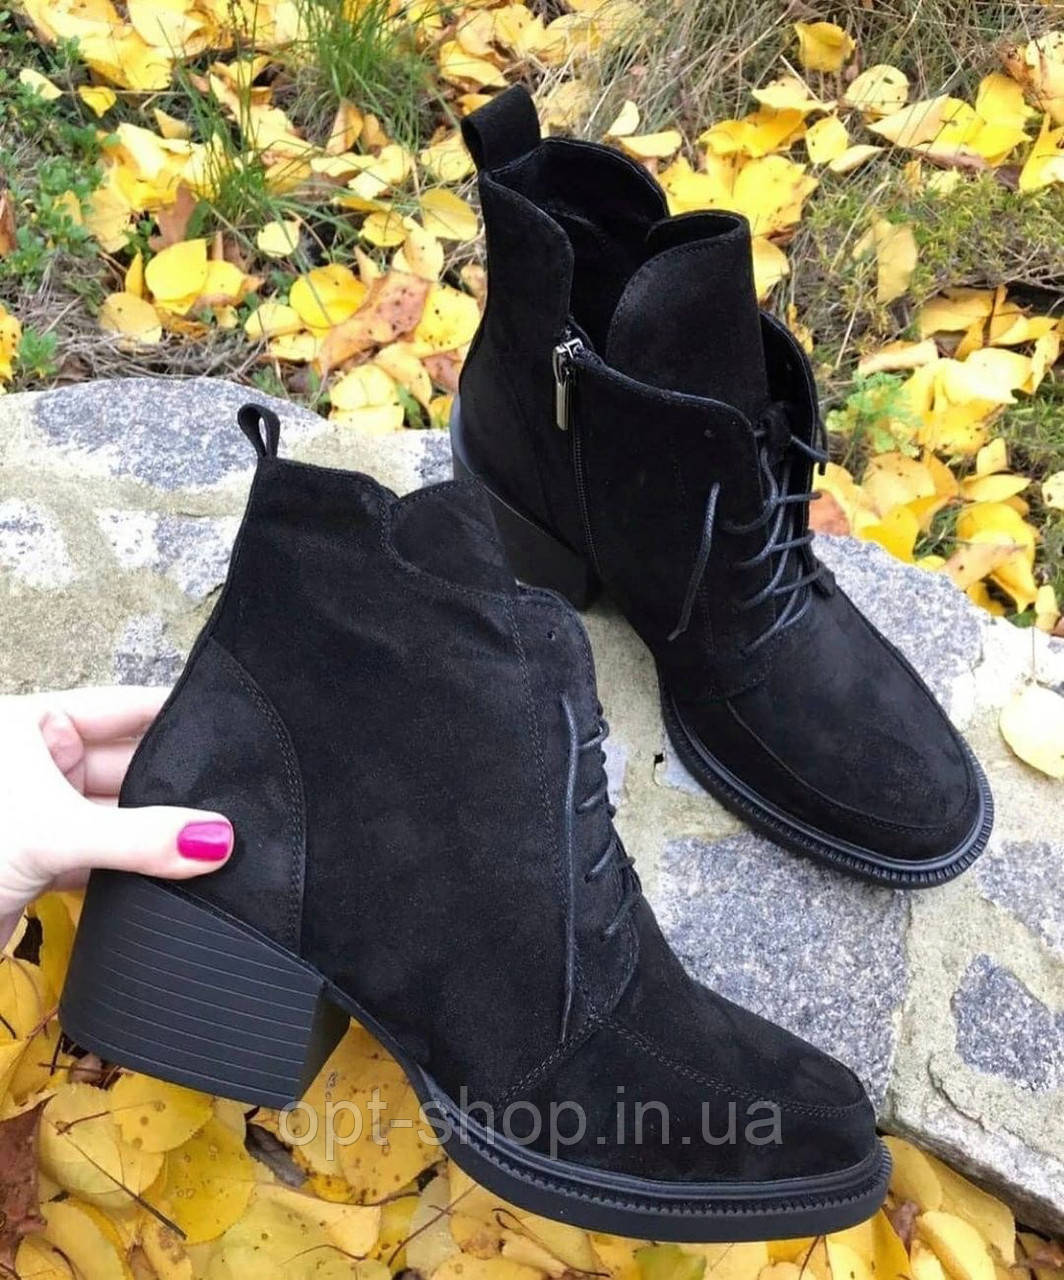 Жіночі демісезонні черевики ботильйони шкіряні чорні на товстому підборі,чоботи жіночі демісезонні